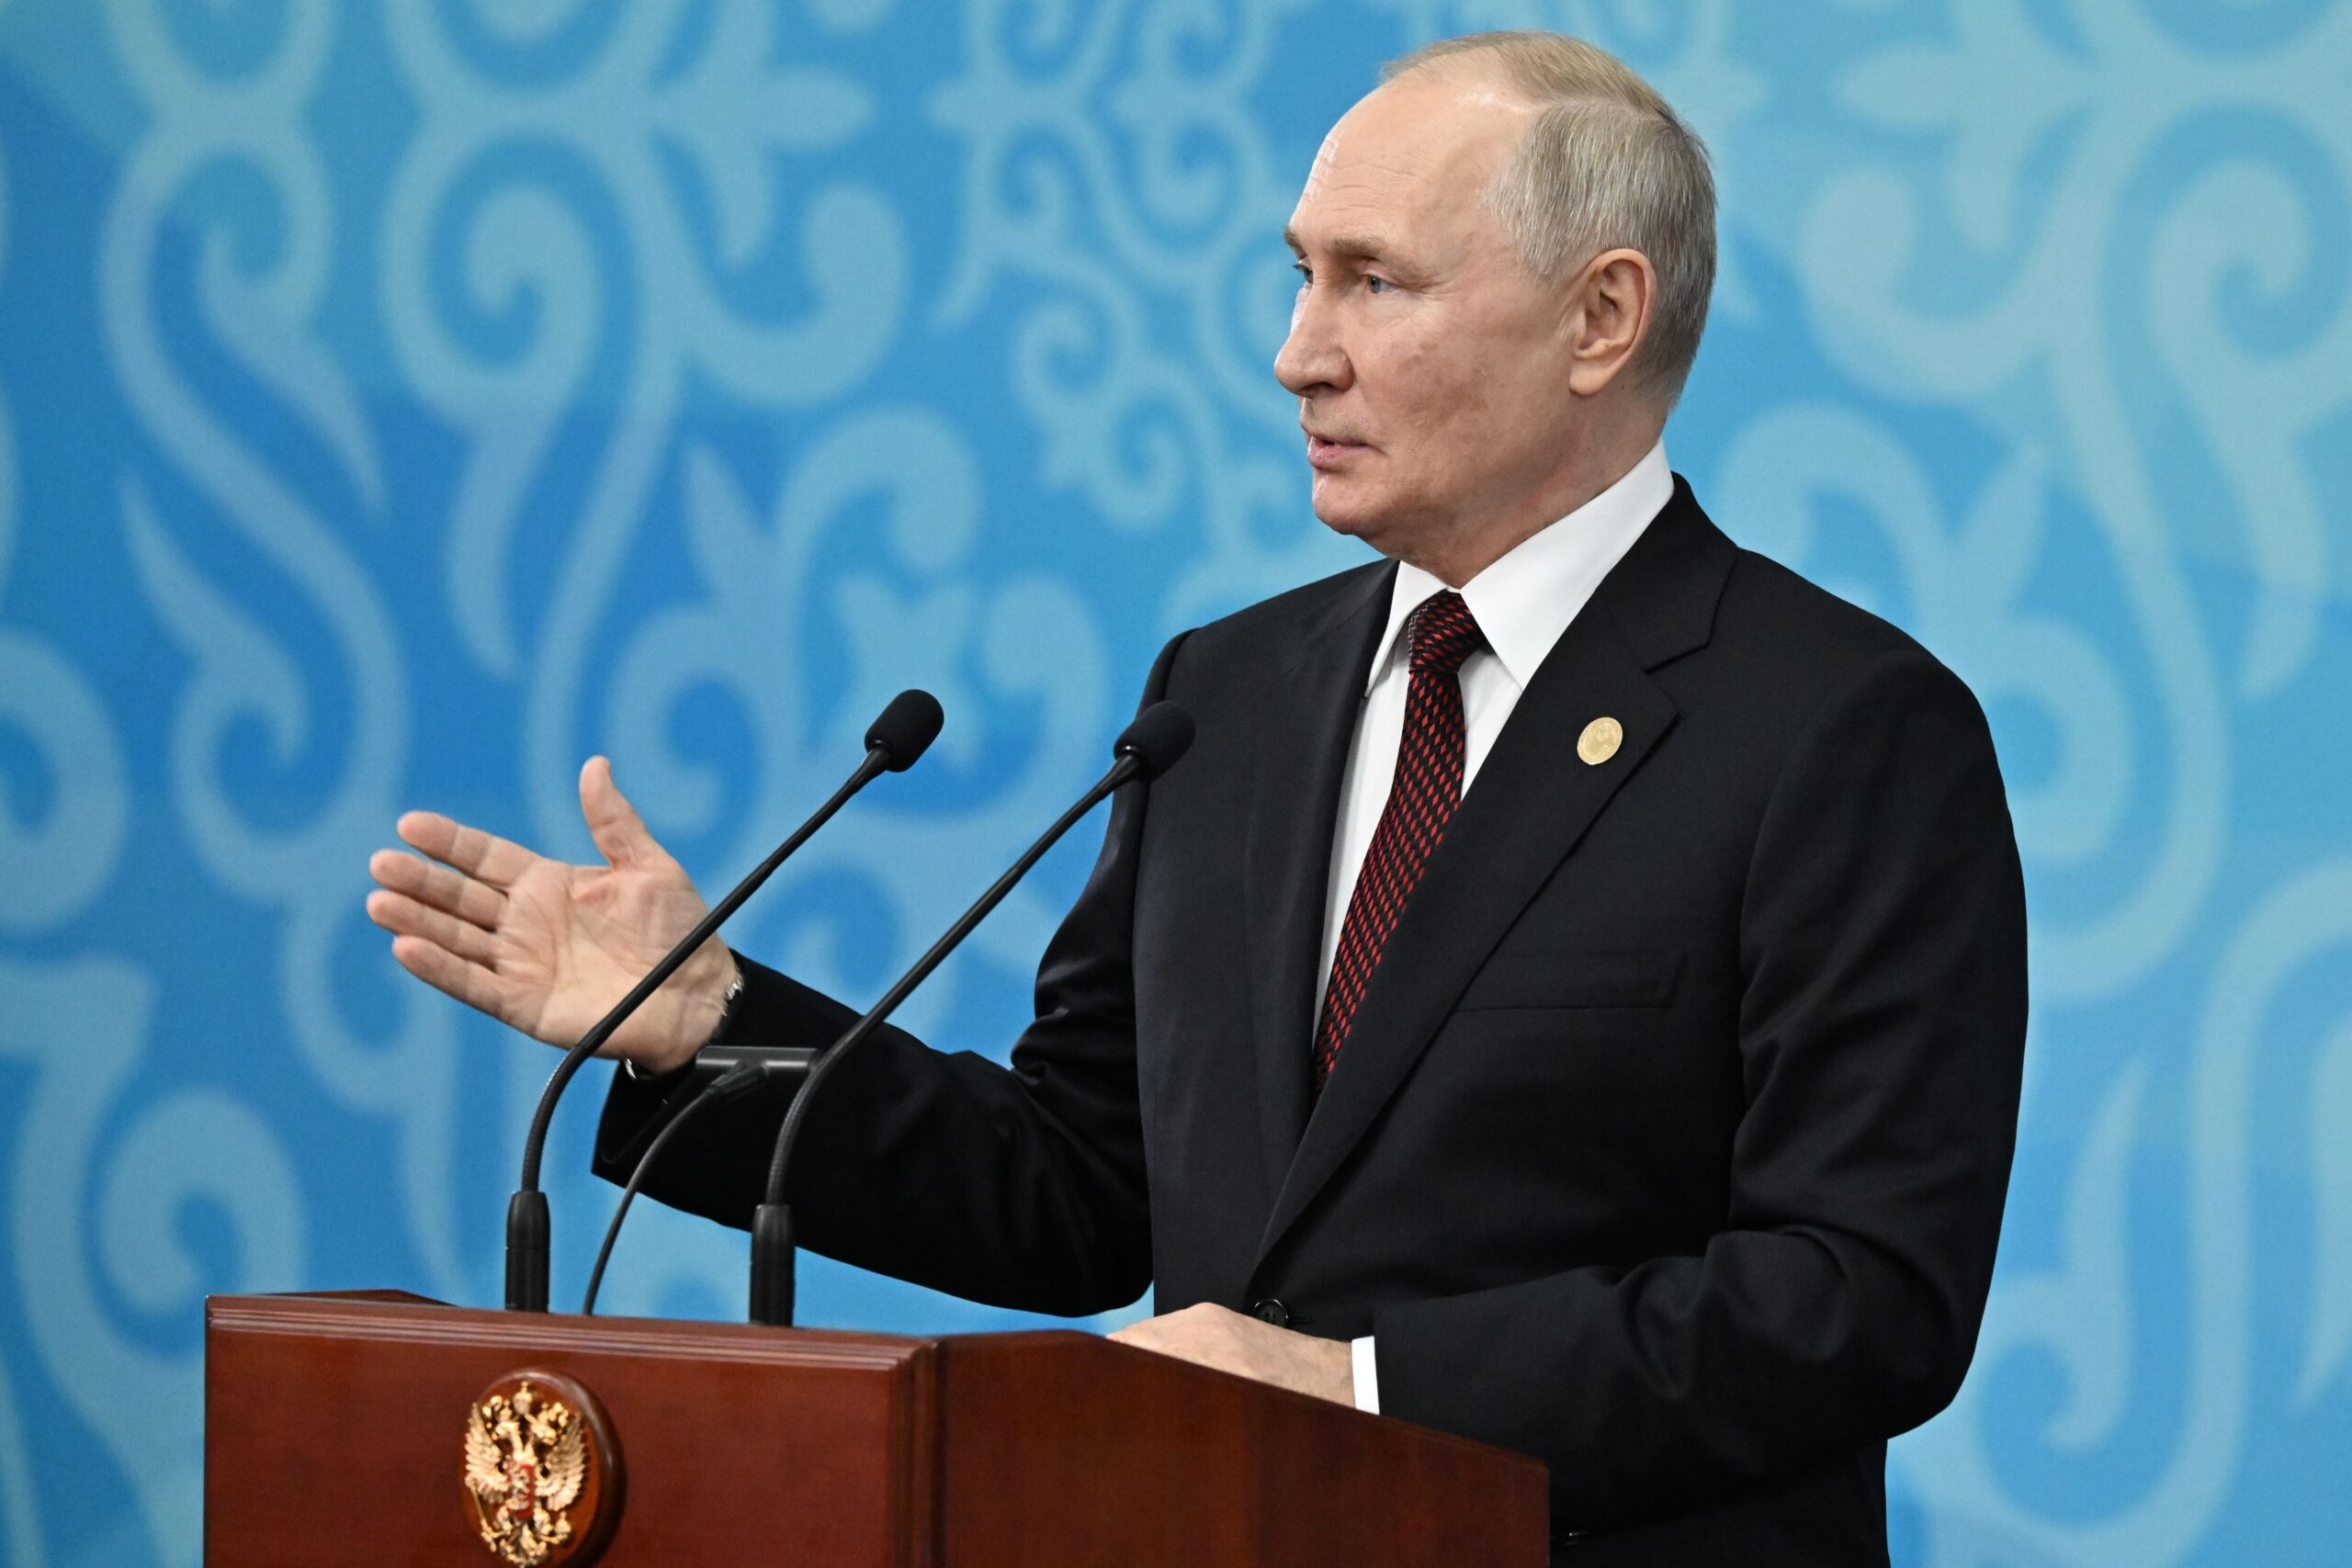 Πούτιν: Θα «εντείνουμε» τα στρατιωτικά πλήγματα στην Ουκρανία μετά τον βομβαρδισμό του Μπέλγκοροντ